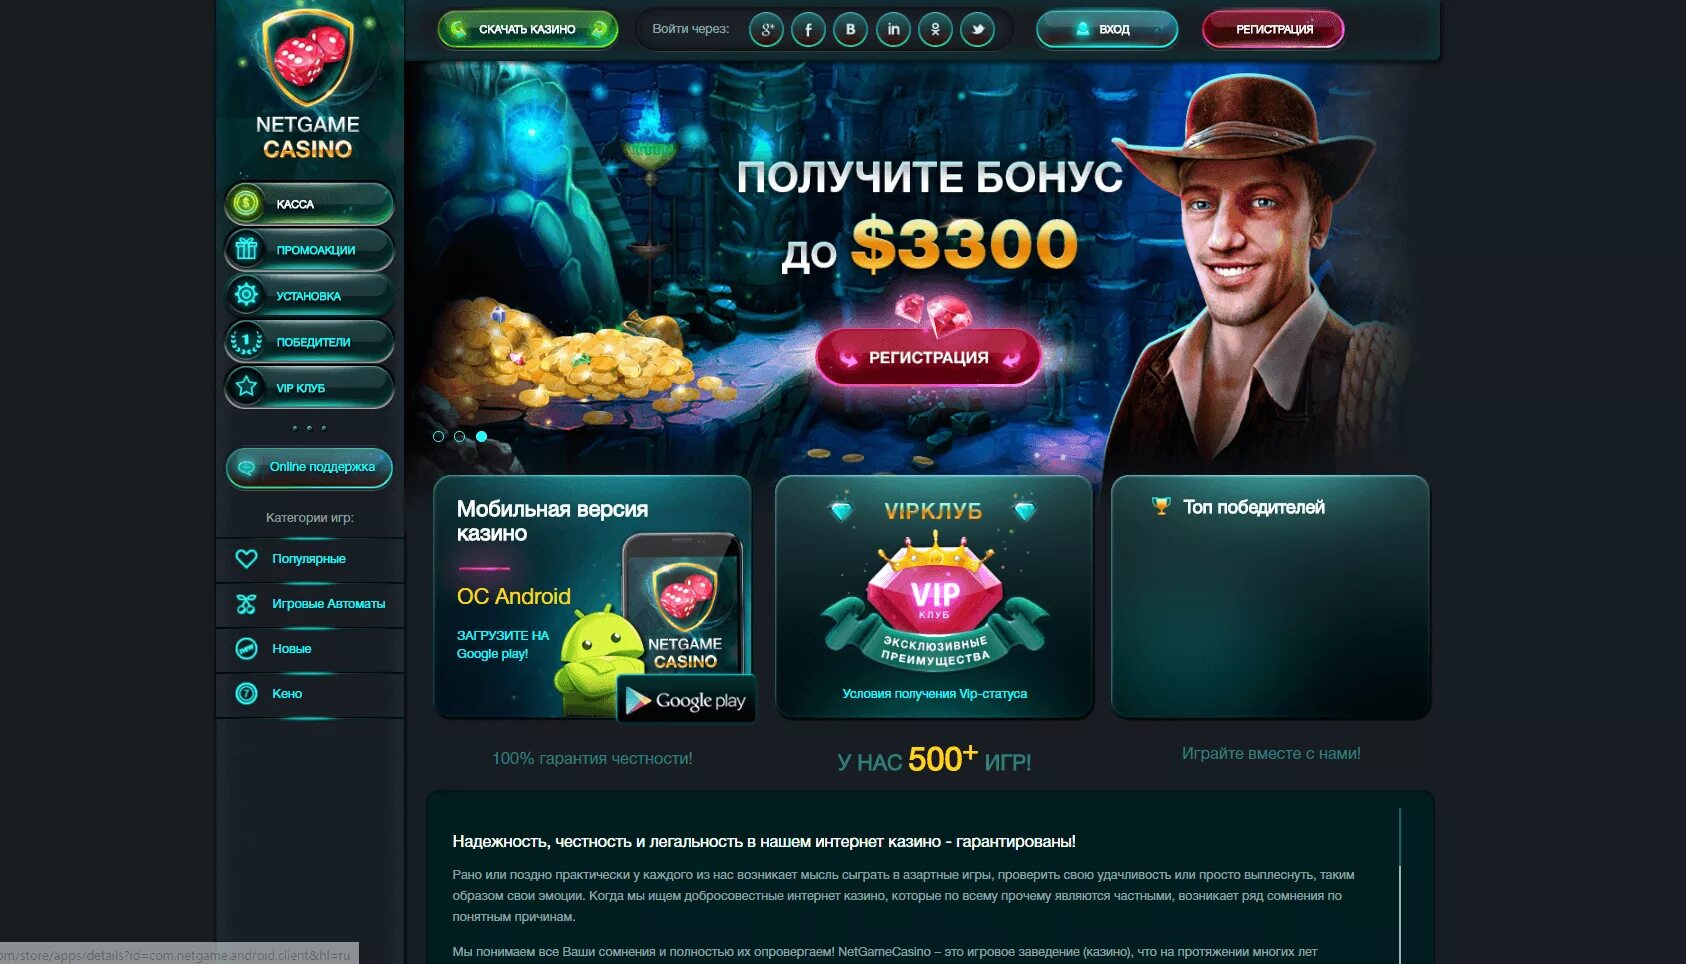 Азартные игры с выводом денег на андроид. Сайты казино. Русские порталы казино. Список казино. Бонусы казино.